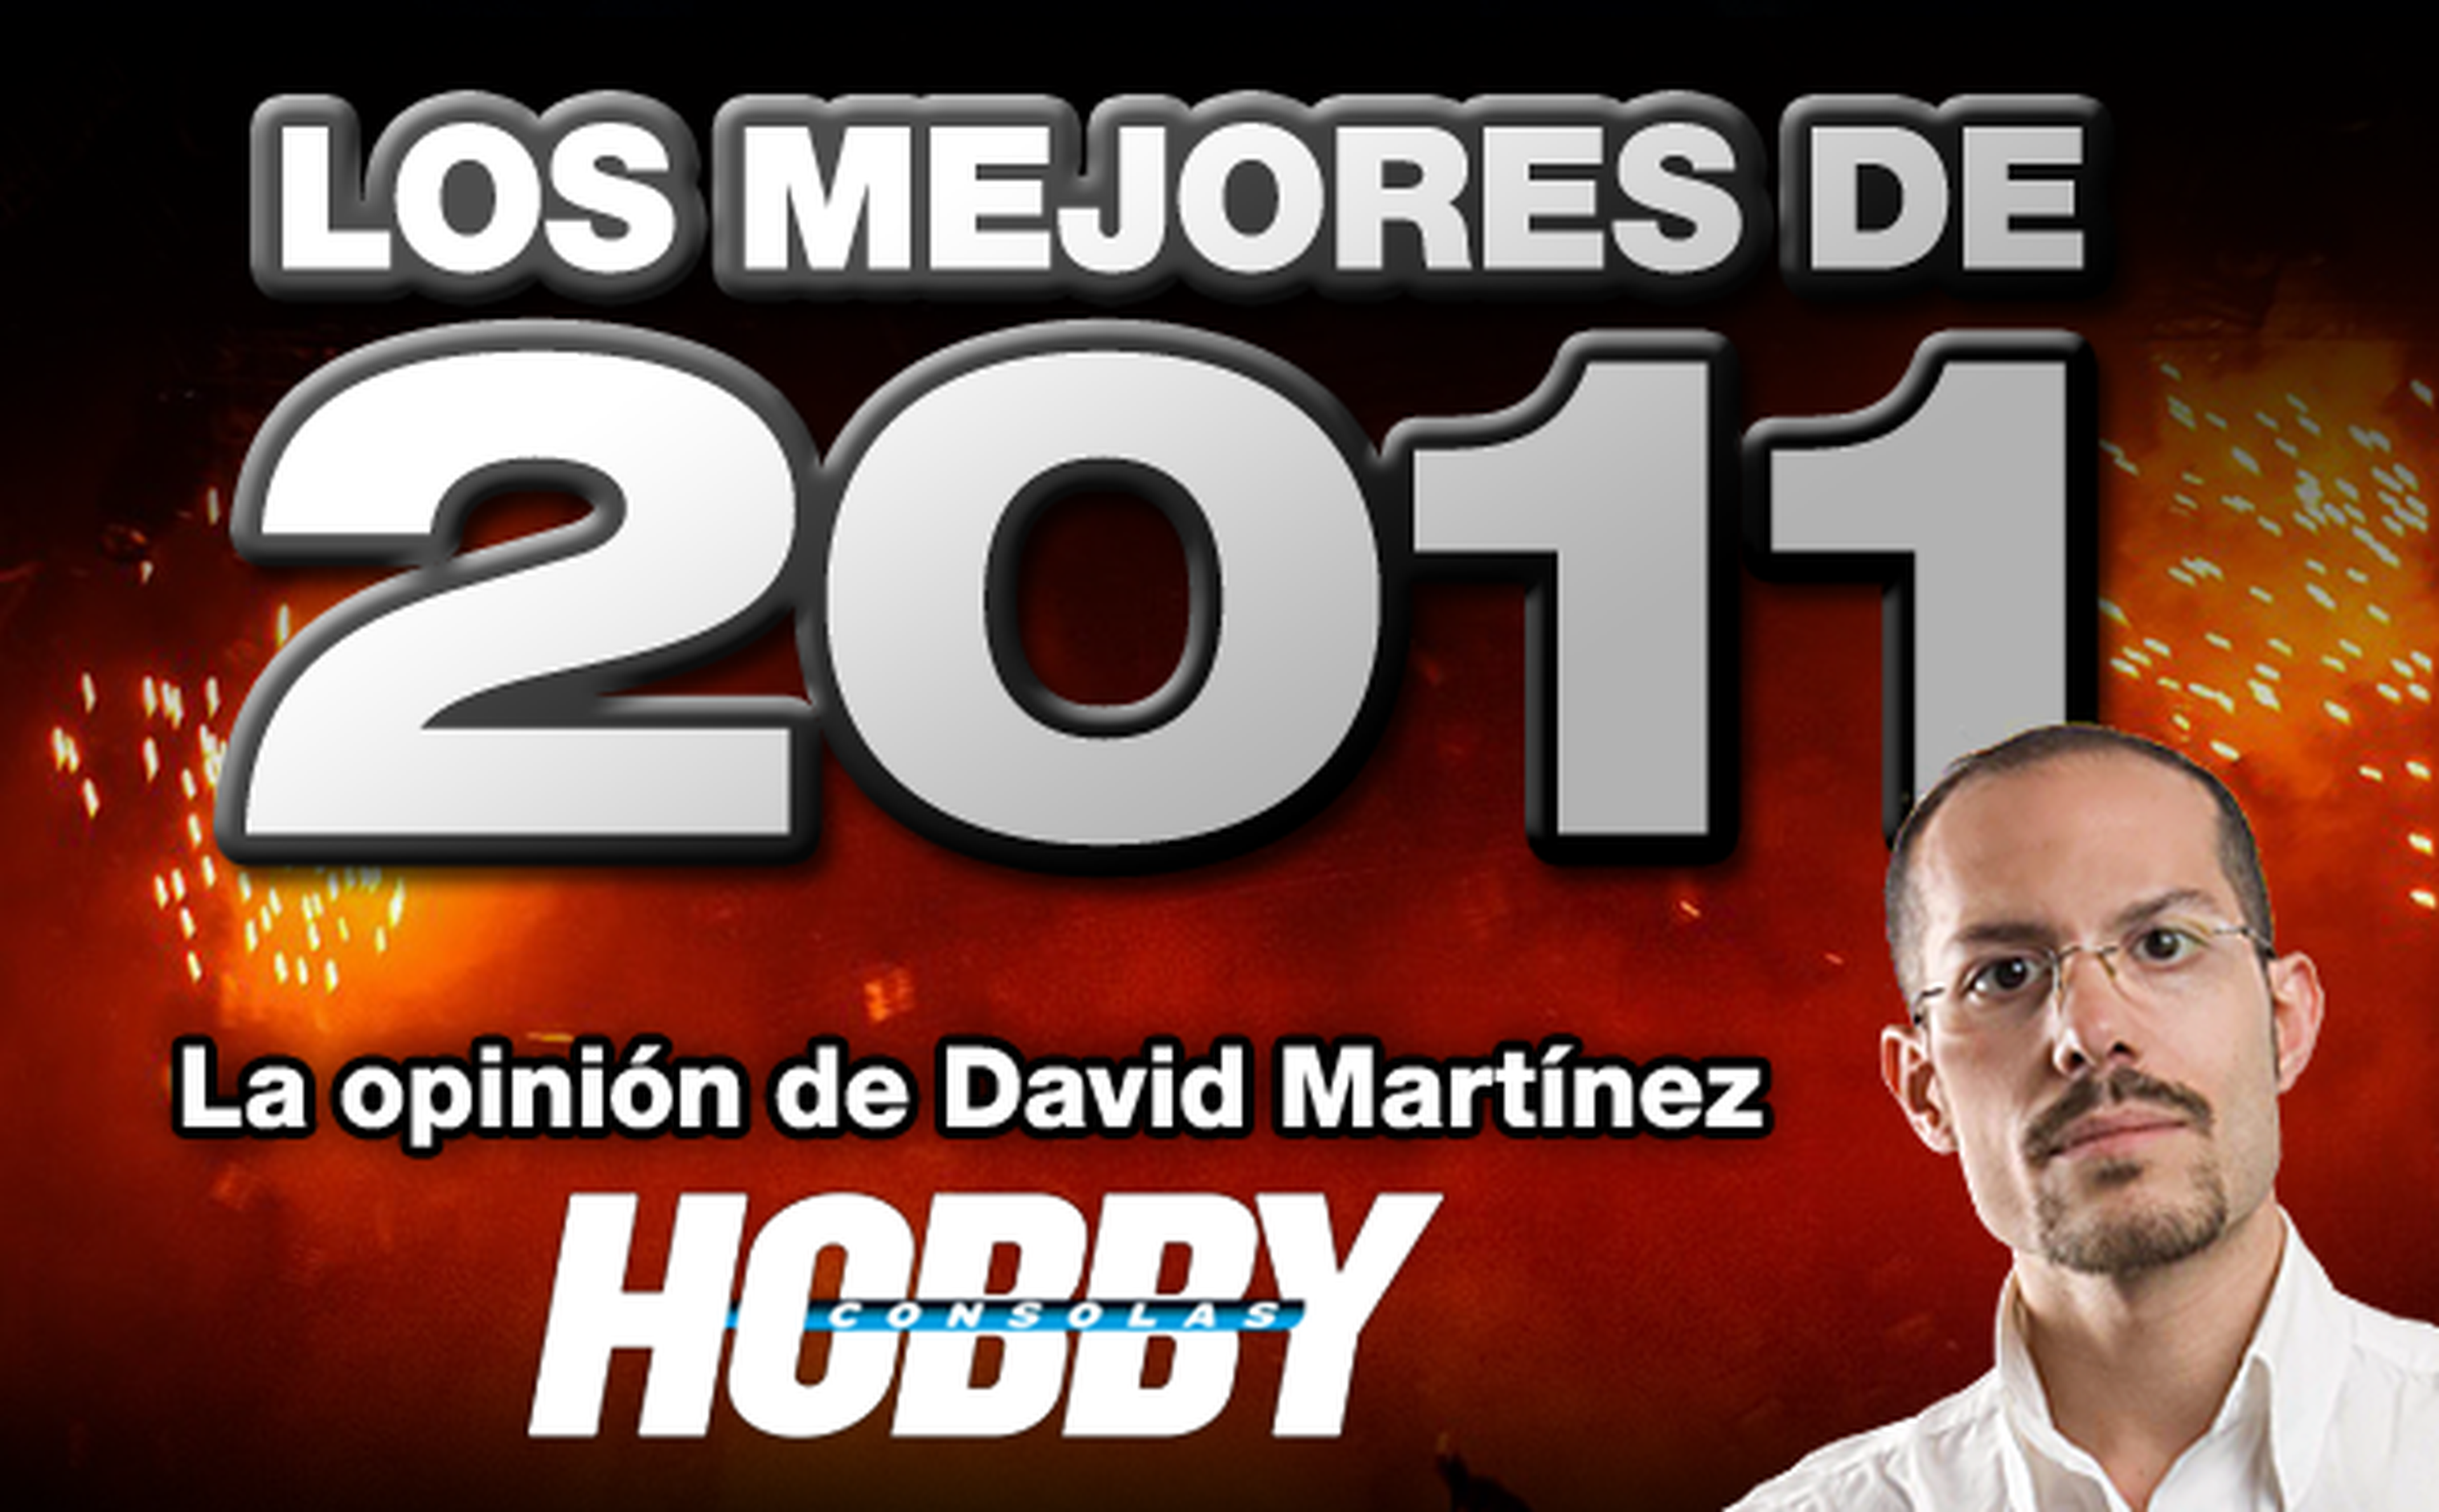 Los mejores de 2011: David Martínez